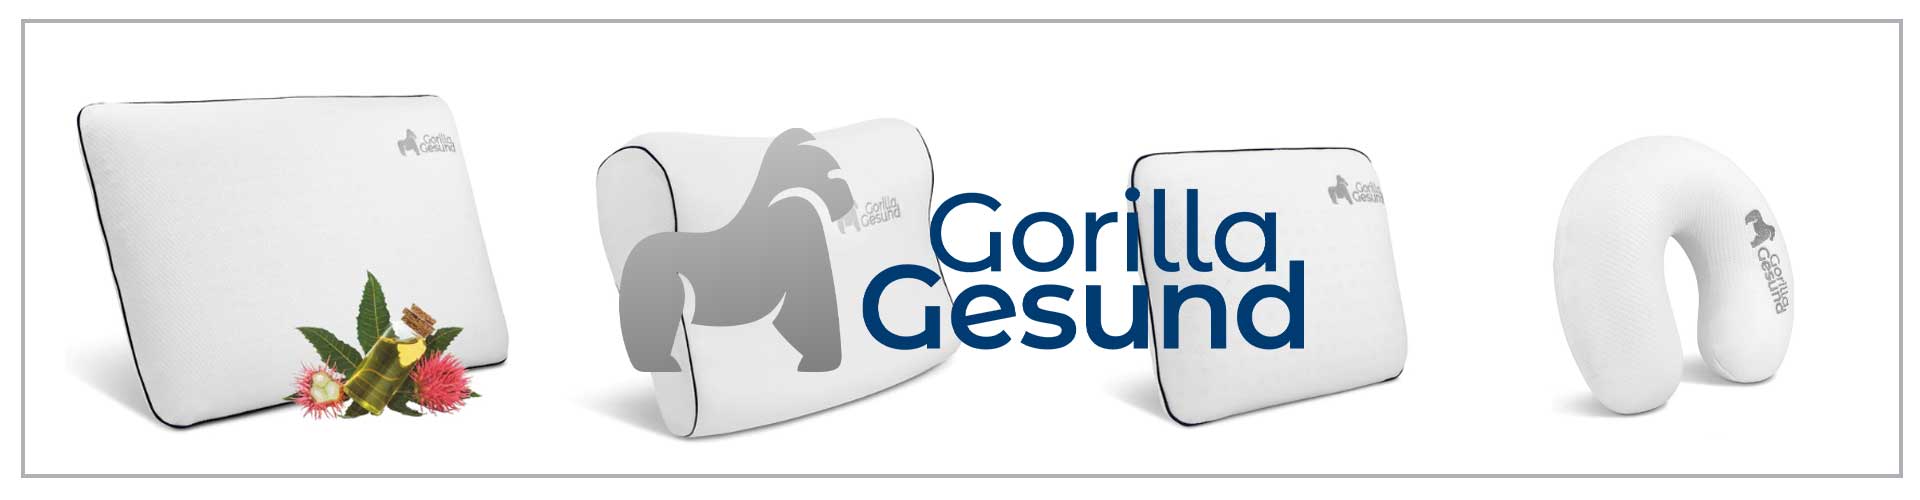 gorilla-gesund-nackenkissen-blog-banner-produkte